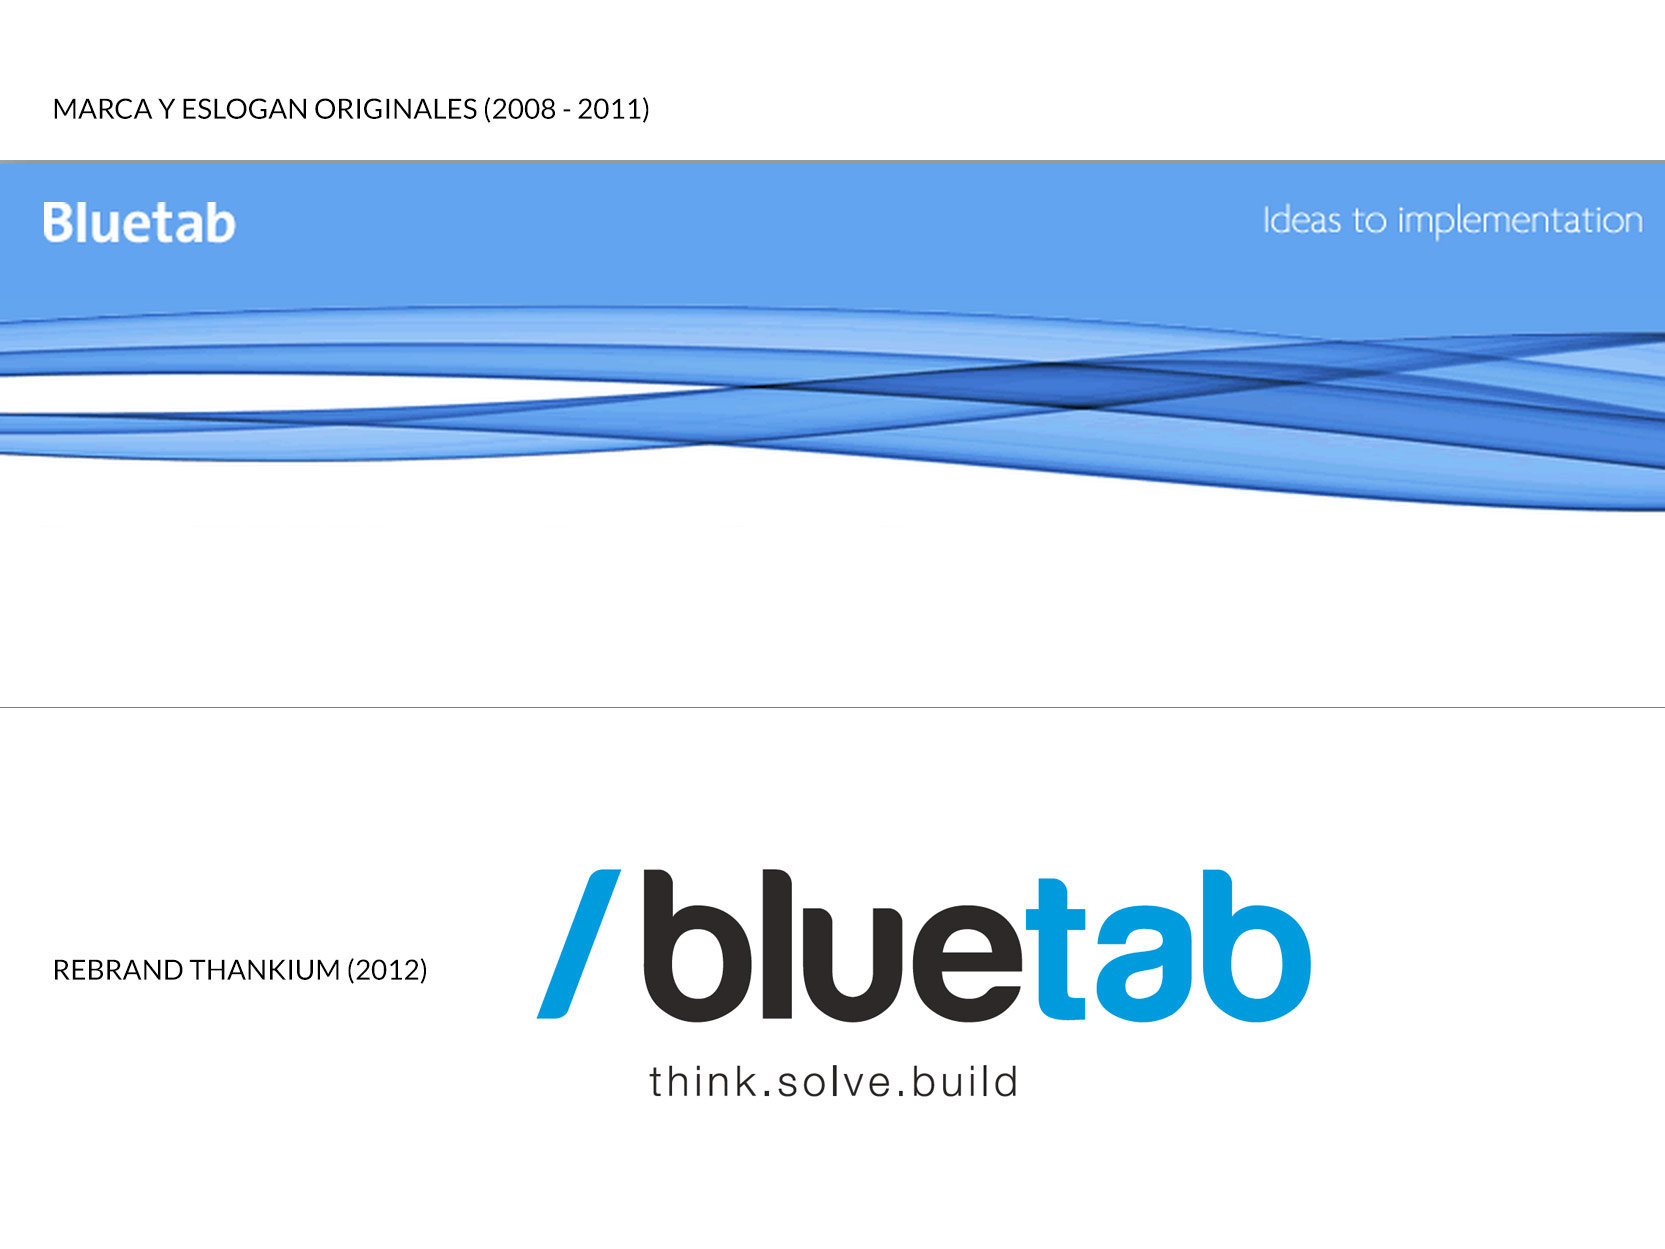 rebrand-bluetab